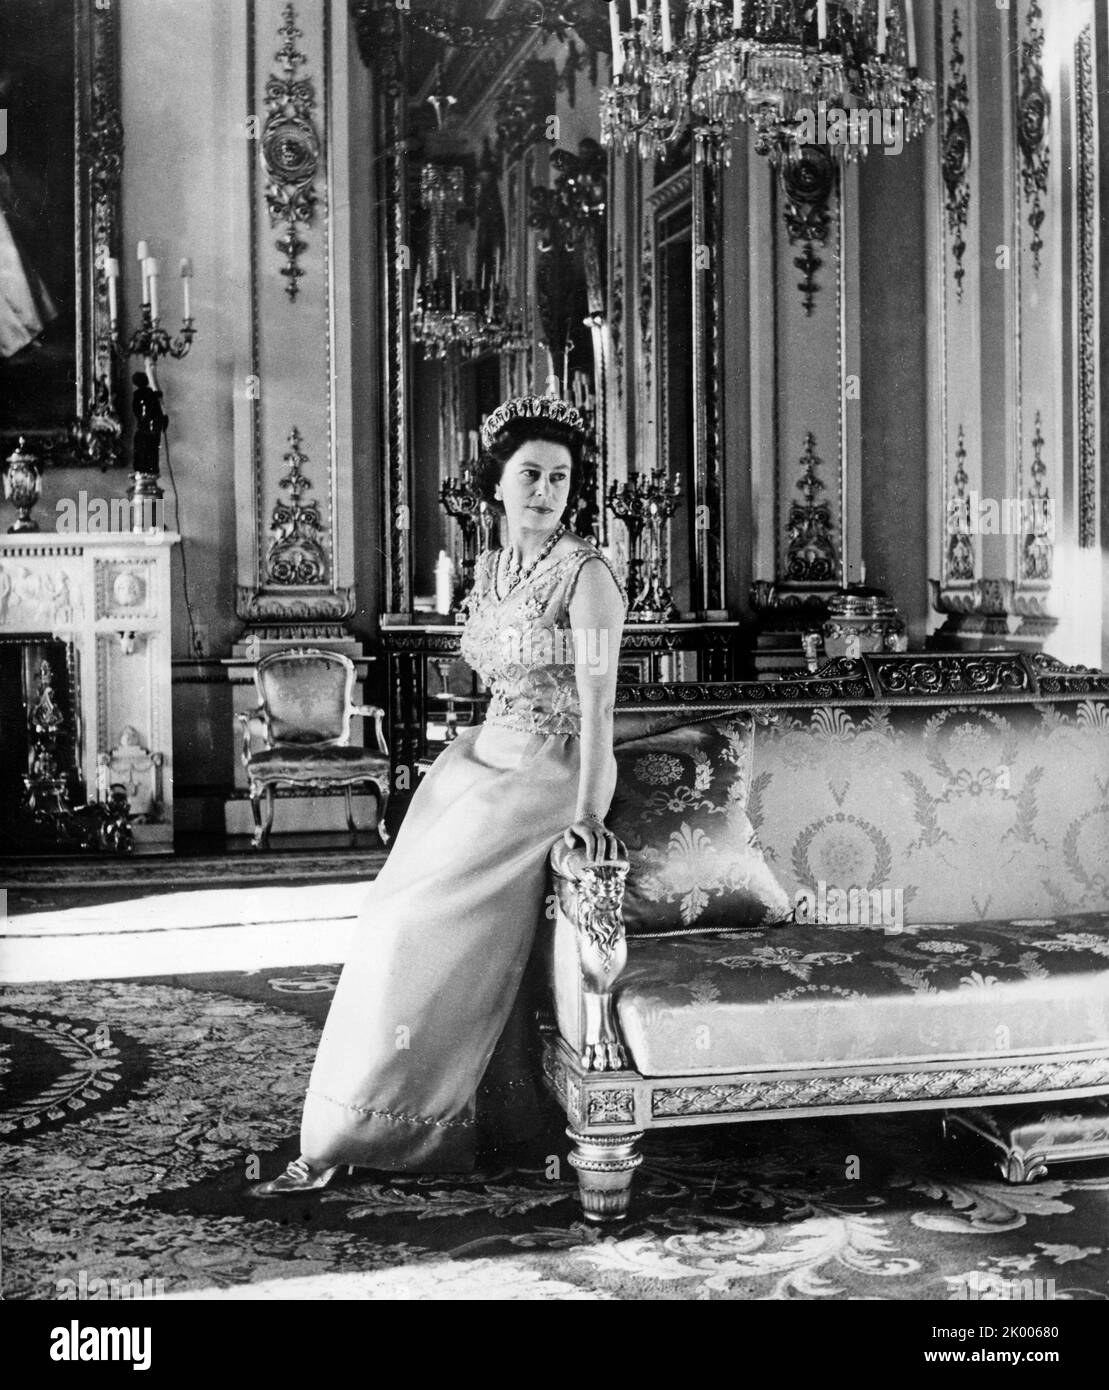 21 aprile 1969 - Londra, Inghilterra, Regno Unito - il 34rd° compleanno DI ELIZABETH II è stato celebrato il 21st 1969 aprile. La sua maestà in un abito da sera in seta turchese è raffigurata nel salotto bianco di Buckingham Palace. La tiara di perle e diamanti che indossa è stata acquistata dalla regina Maria dalla famiglia della granduchessa Vladimir di Russia nel 1921, la collana di perle e diamanti è stata presentata alla regina Vittoria al momento della costruzione della Albert Hall. (Credit Image: © Keystone Press Agency/ZUMA Press Wire) Foto Stock